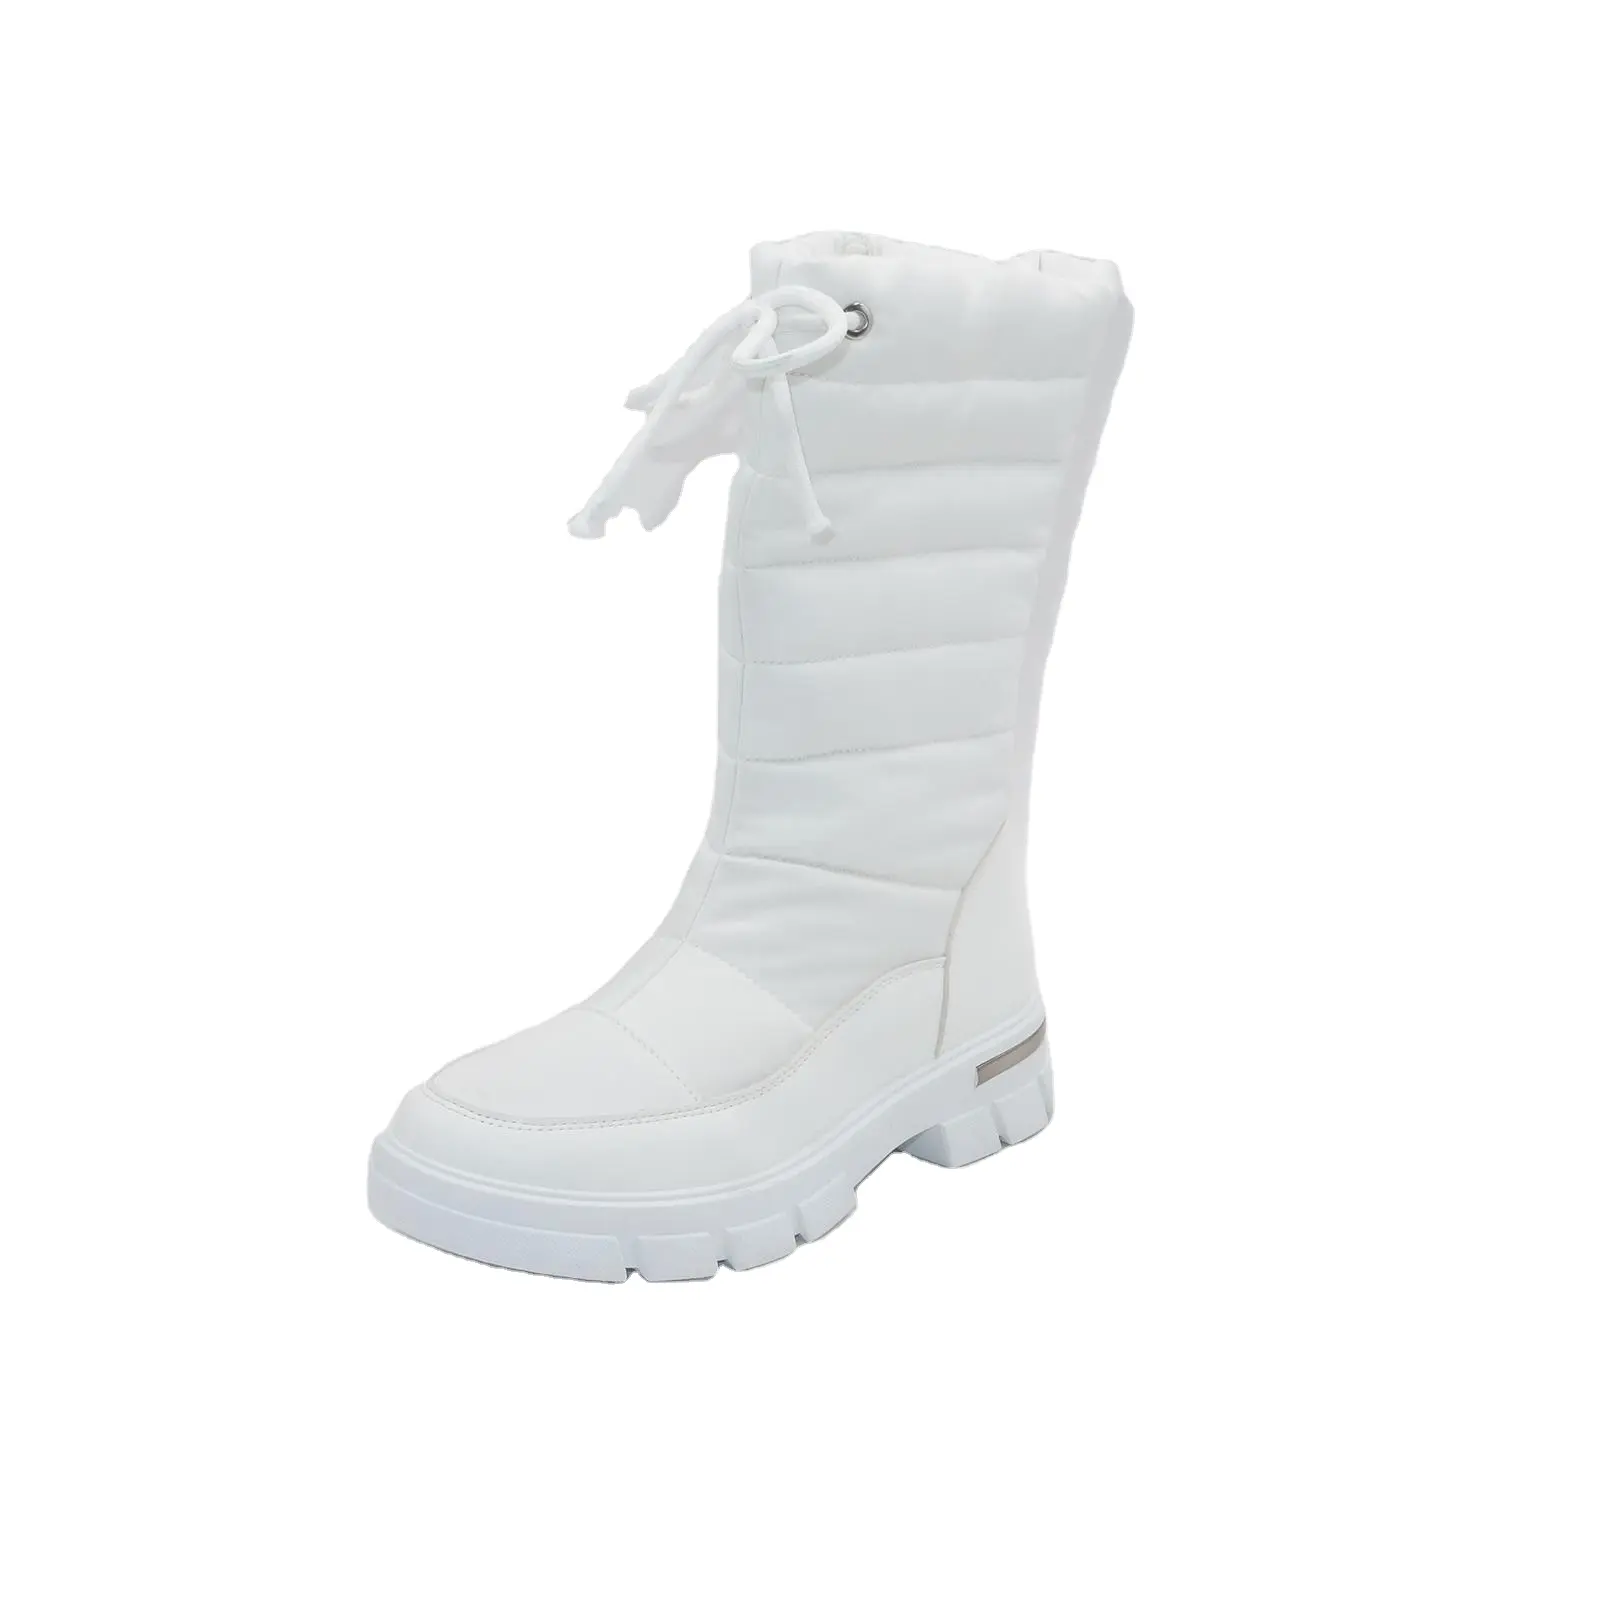 Botas de neve para mulheres, botas personalizadas de cano alto com sola TPR para aquecer os pés ao ar livre, botas à prova d'água até o joelho, novidade personalizada